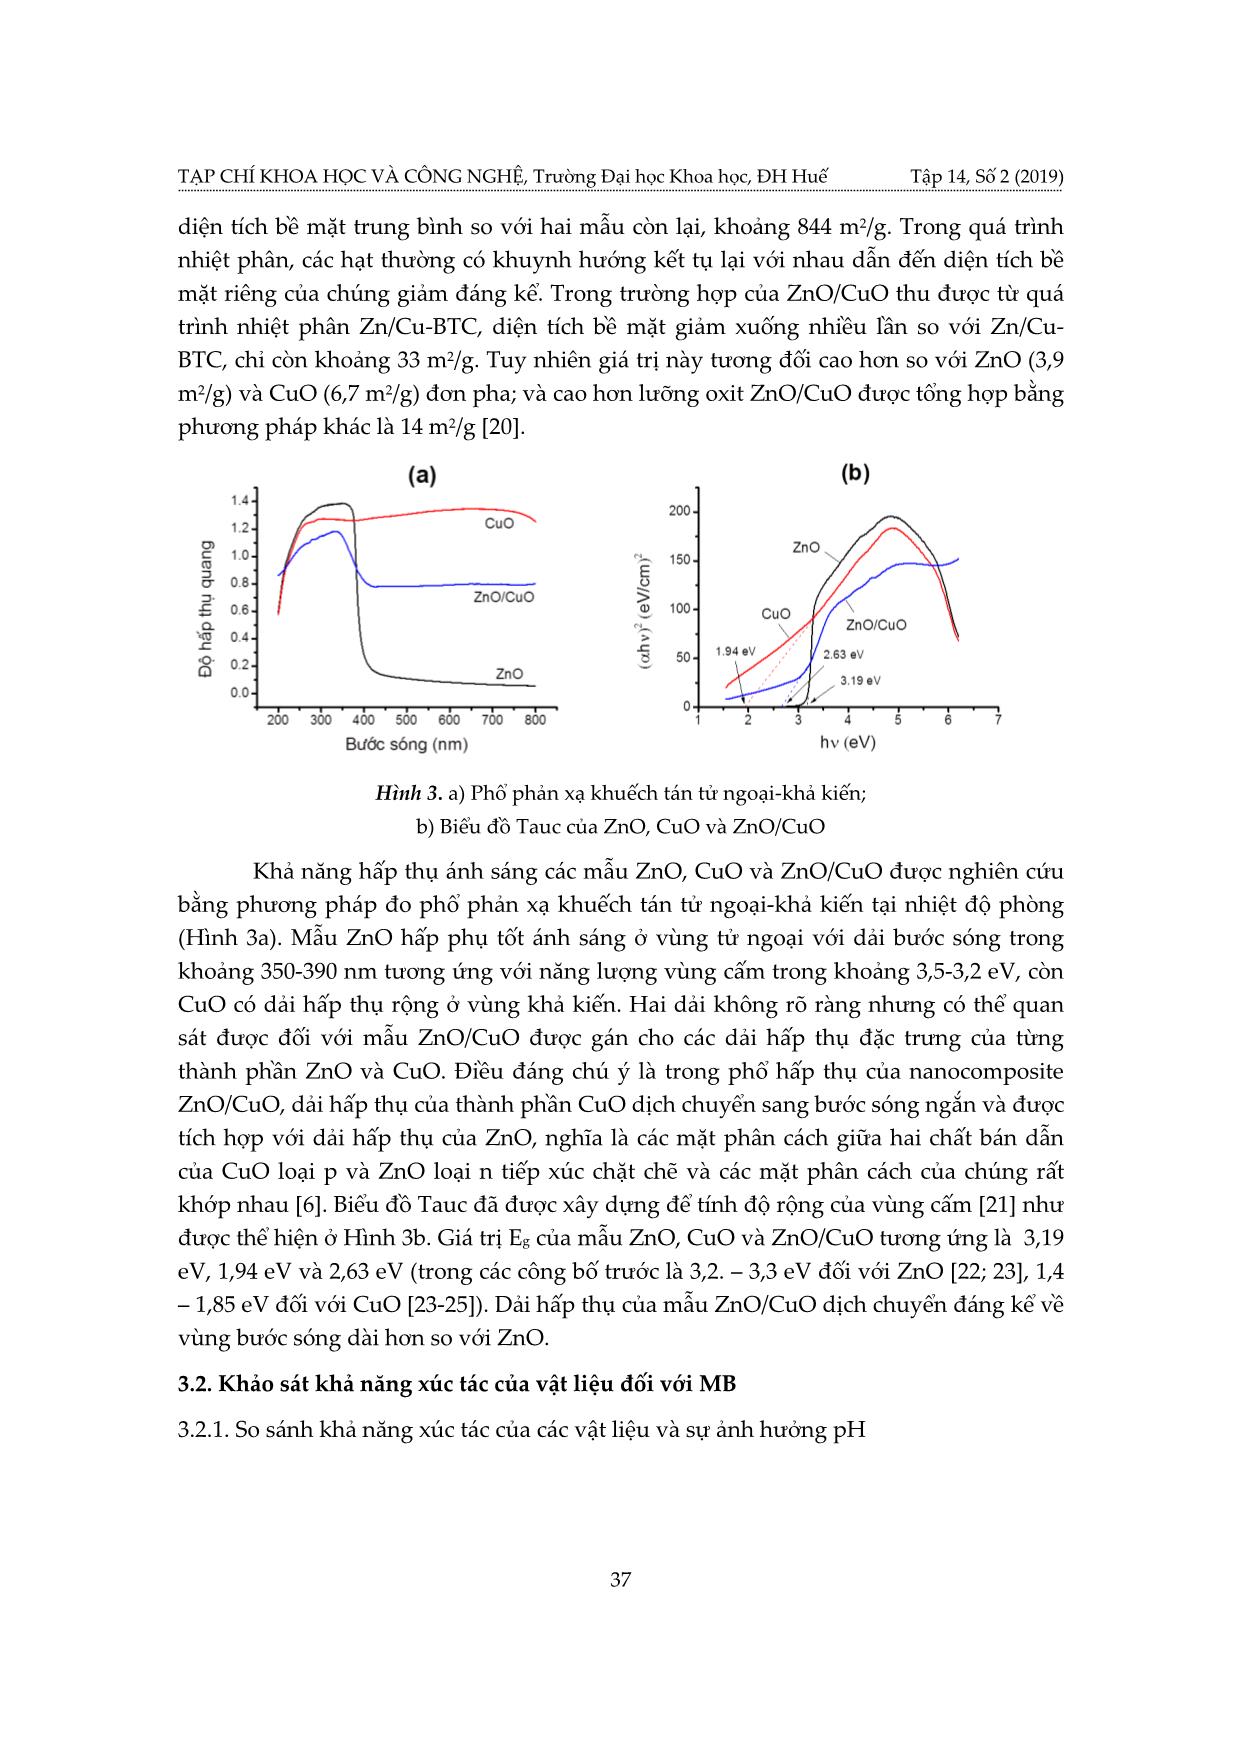 Tổng hợp lưỡng oxit Zno/CuO và ứng dụng làm xúc tác quang hóa trang 7